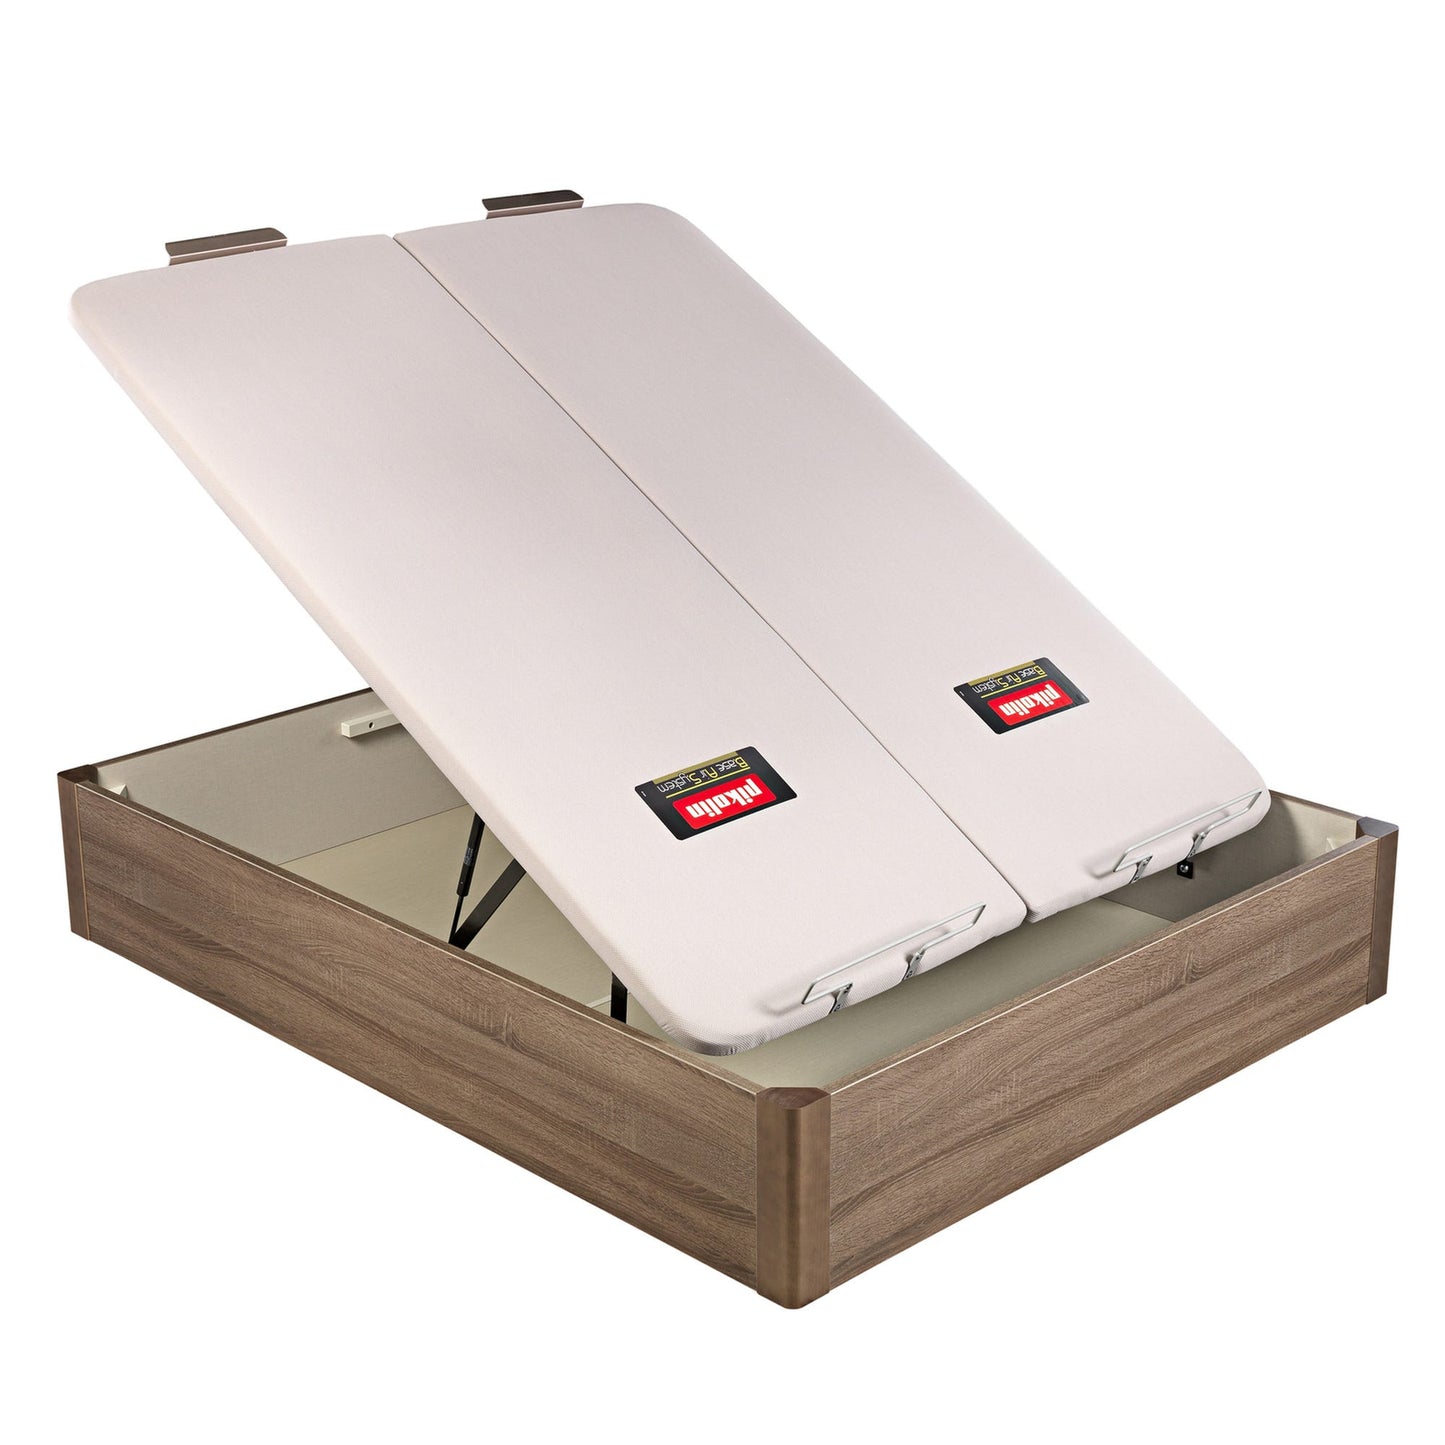 Canapé abatible de madera de tapa doble de color roble - DESIGN - 180x220